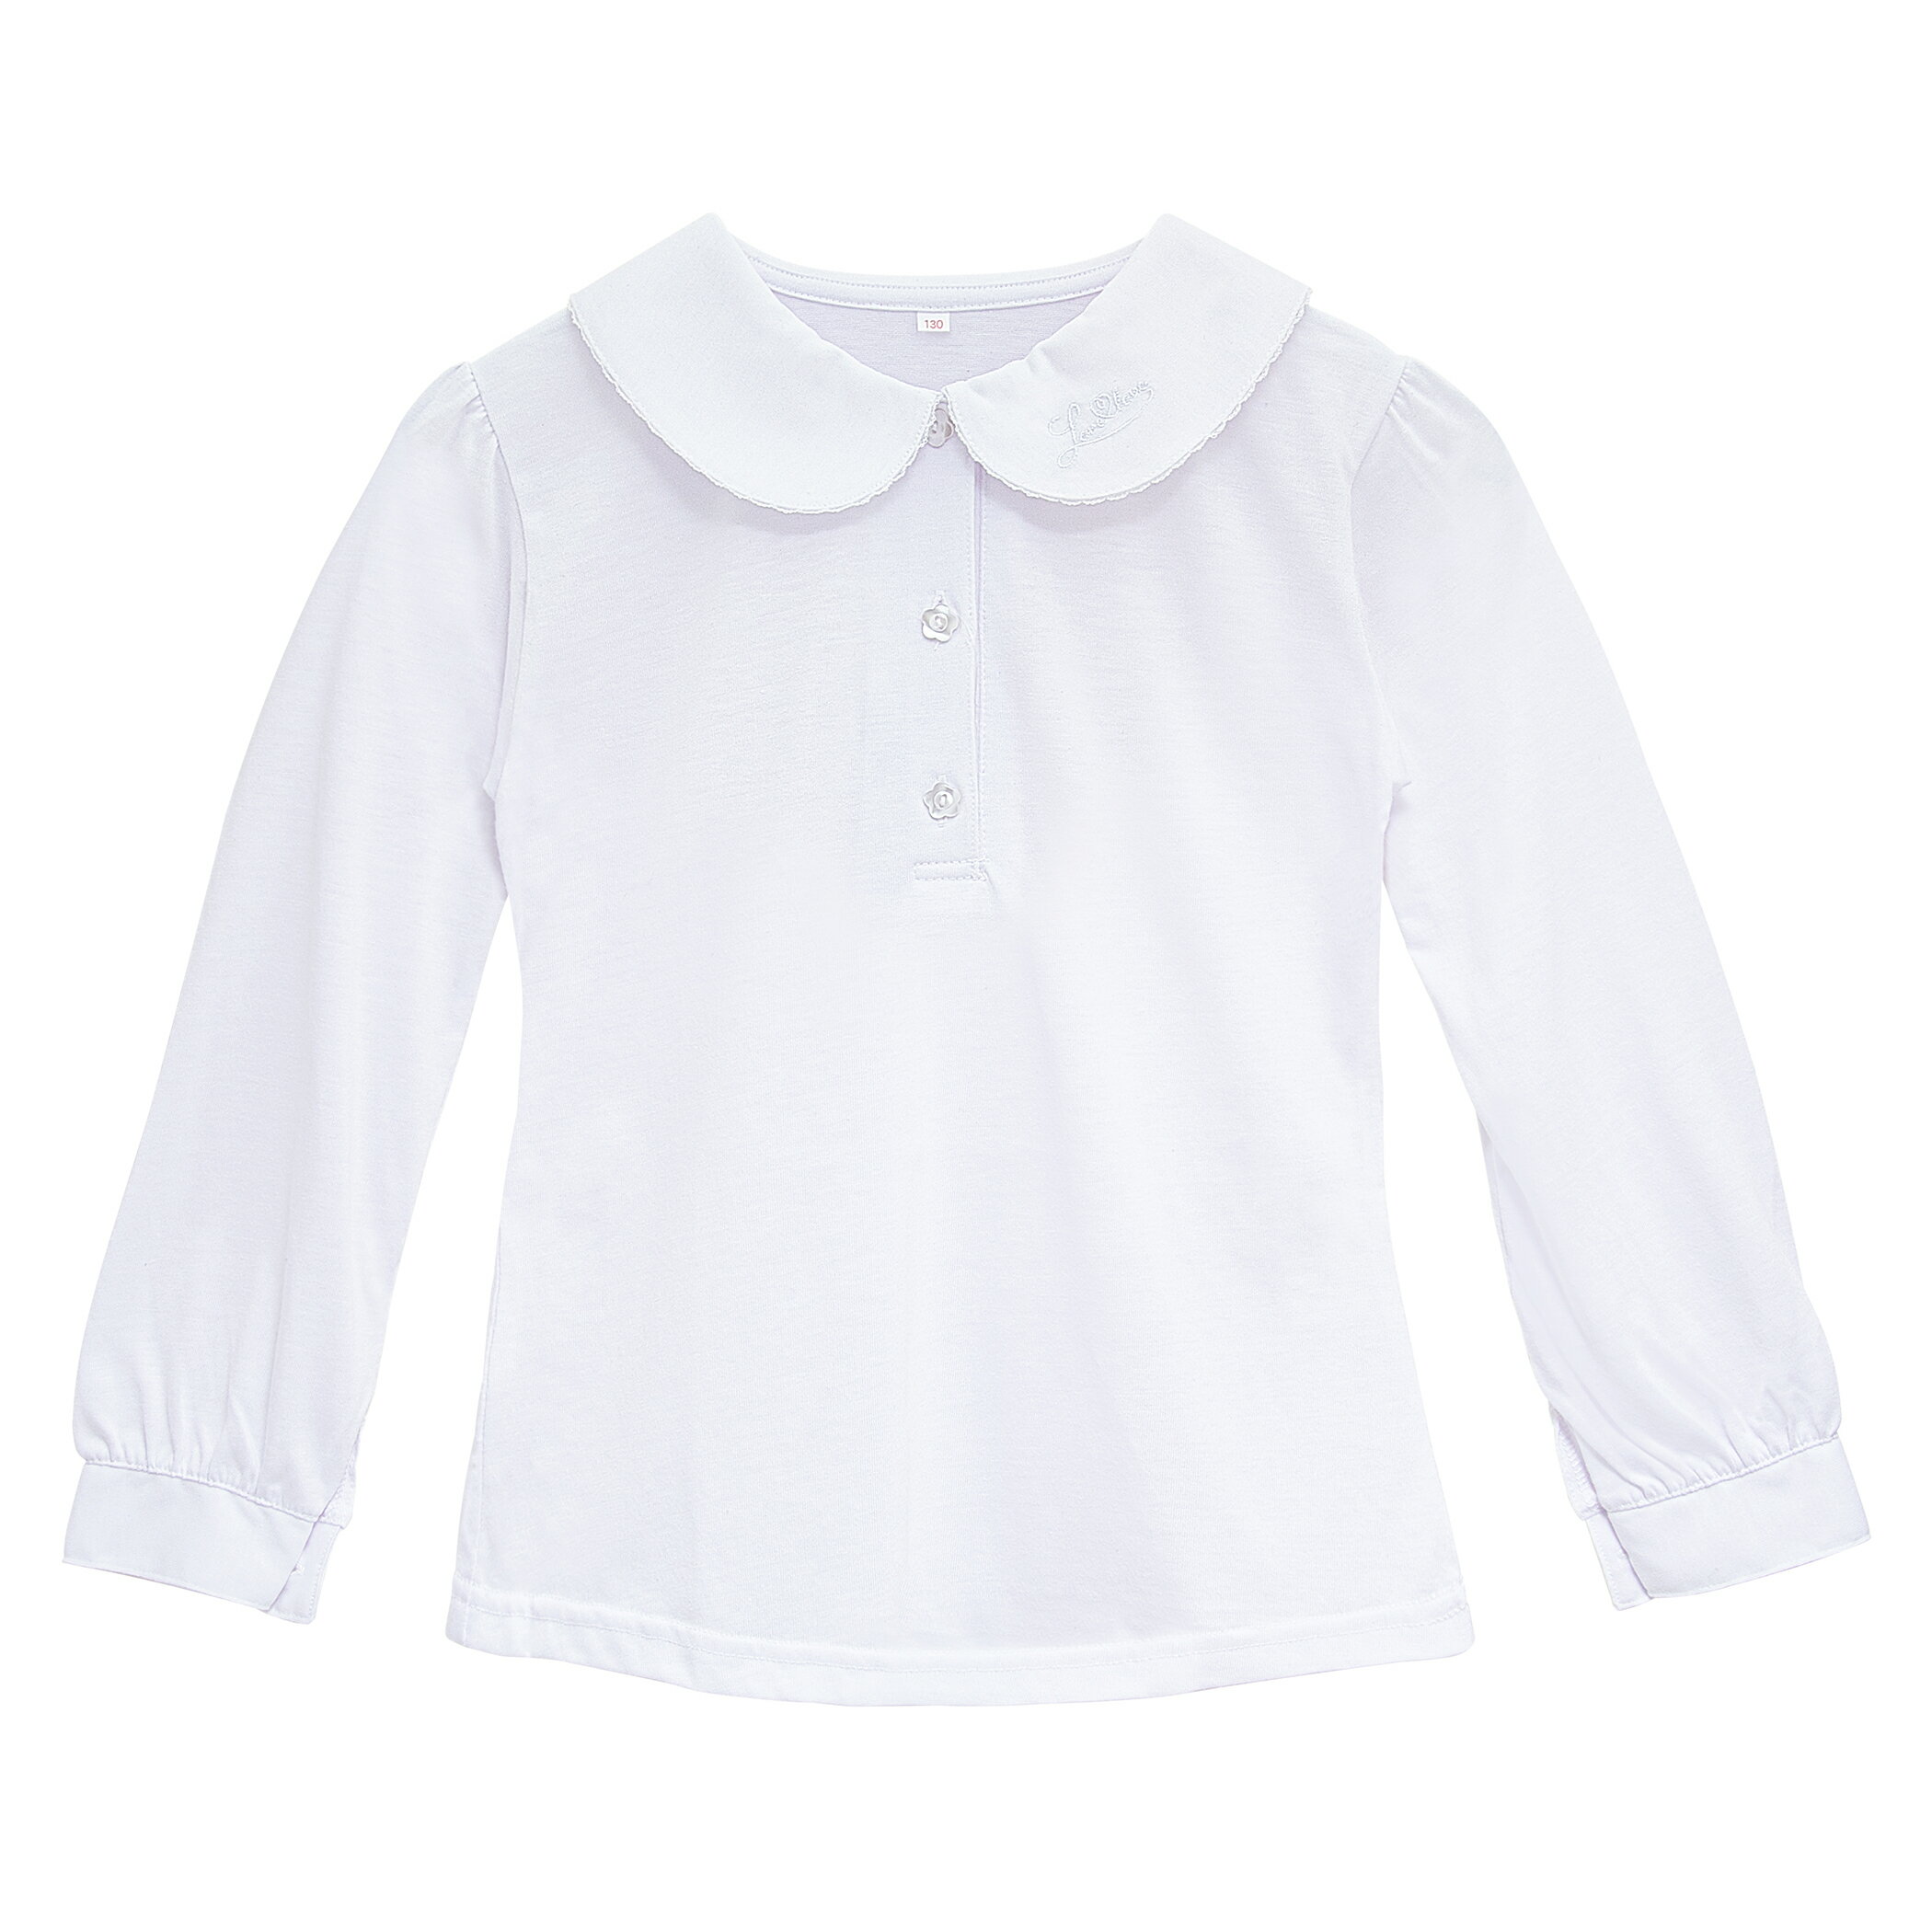 1cm女の子 制服にも 白の長袖 丸襟スクールシャツ ブラウスのおすすめランキング キテミヨ Kitemiyo